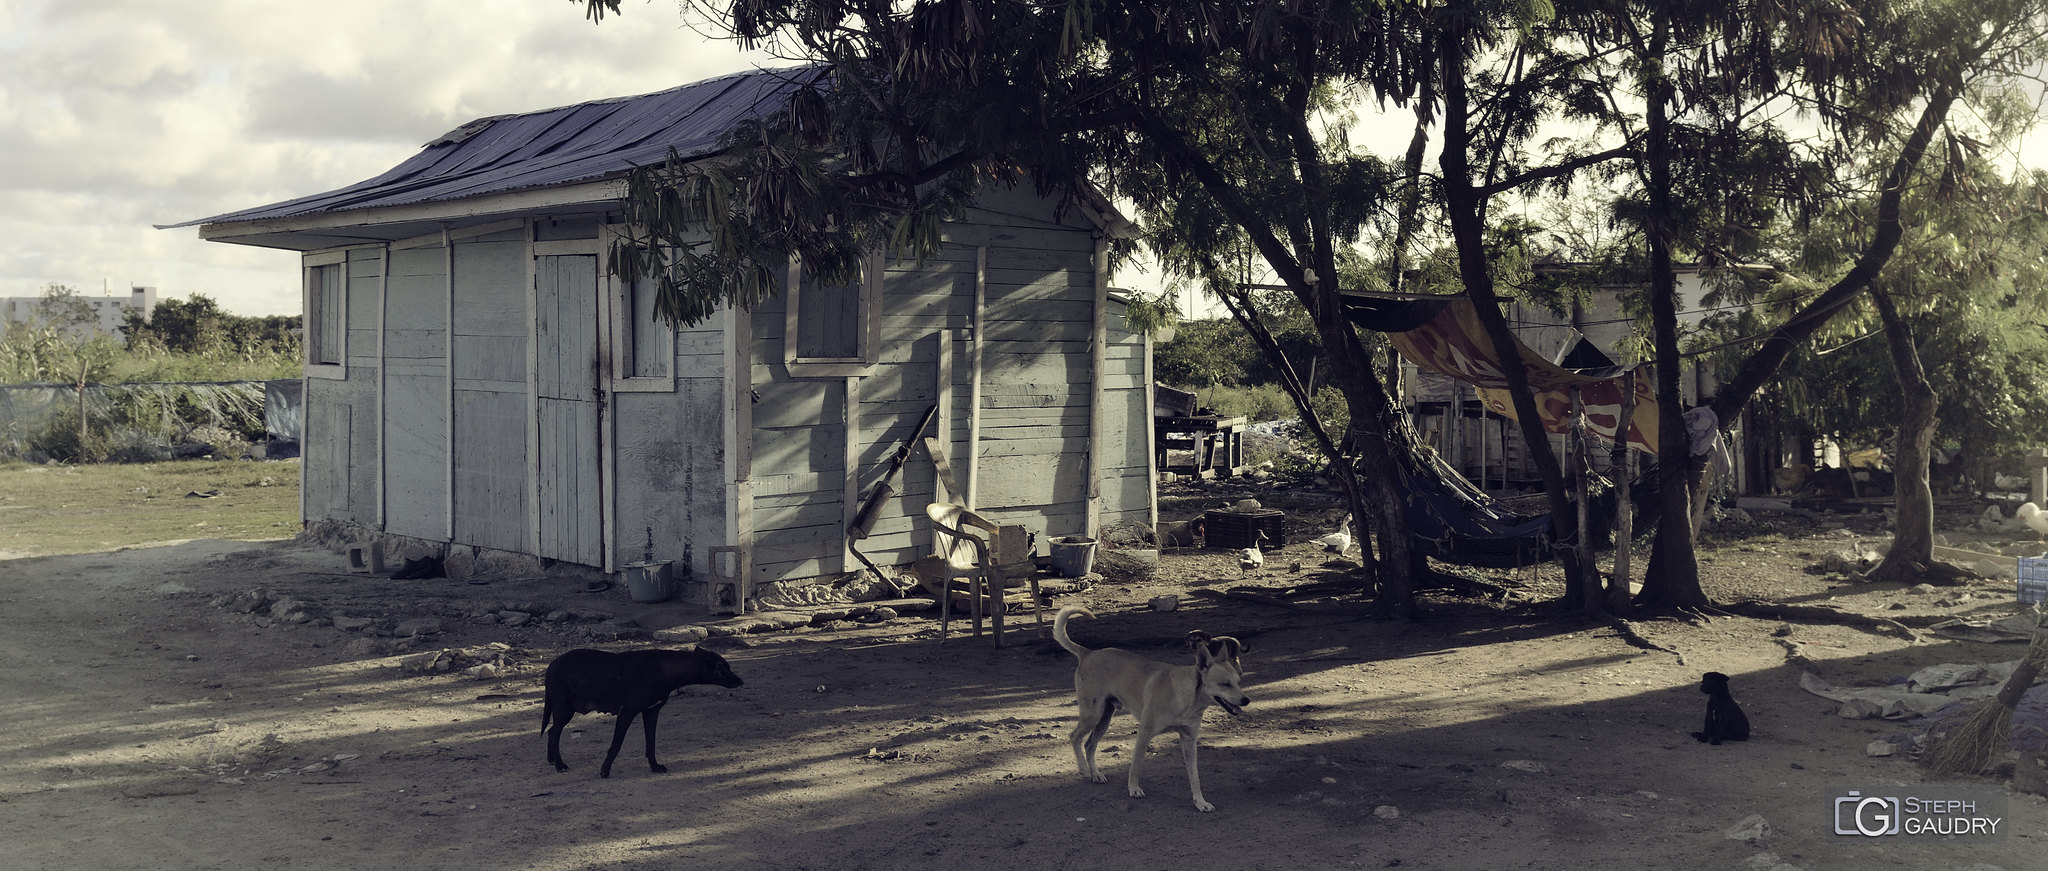 Un hamac à l'ombre aux Caraïbes [Click to start slideshow]